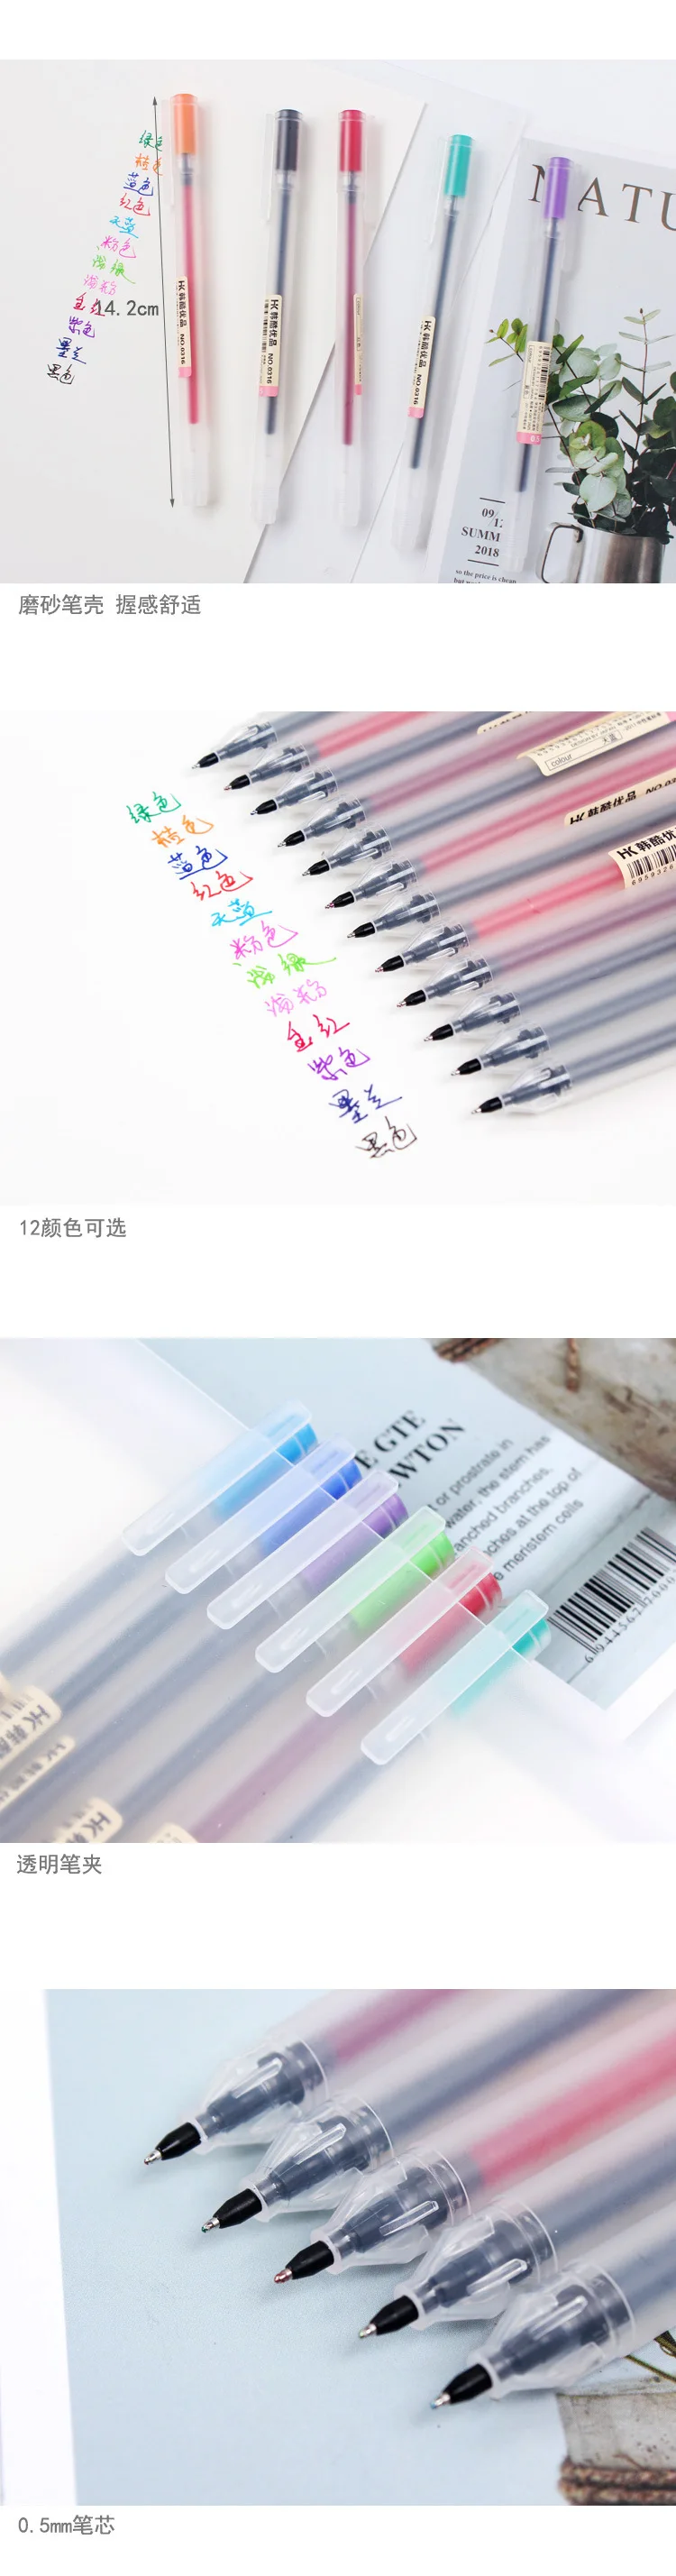 3 шт./лот в японском стиле гелевая ручка 0,5 мм Цвет чернилами Maker ручка школьные канцелярские студенческий экзамен записи поставка канцтоваров